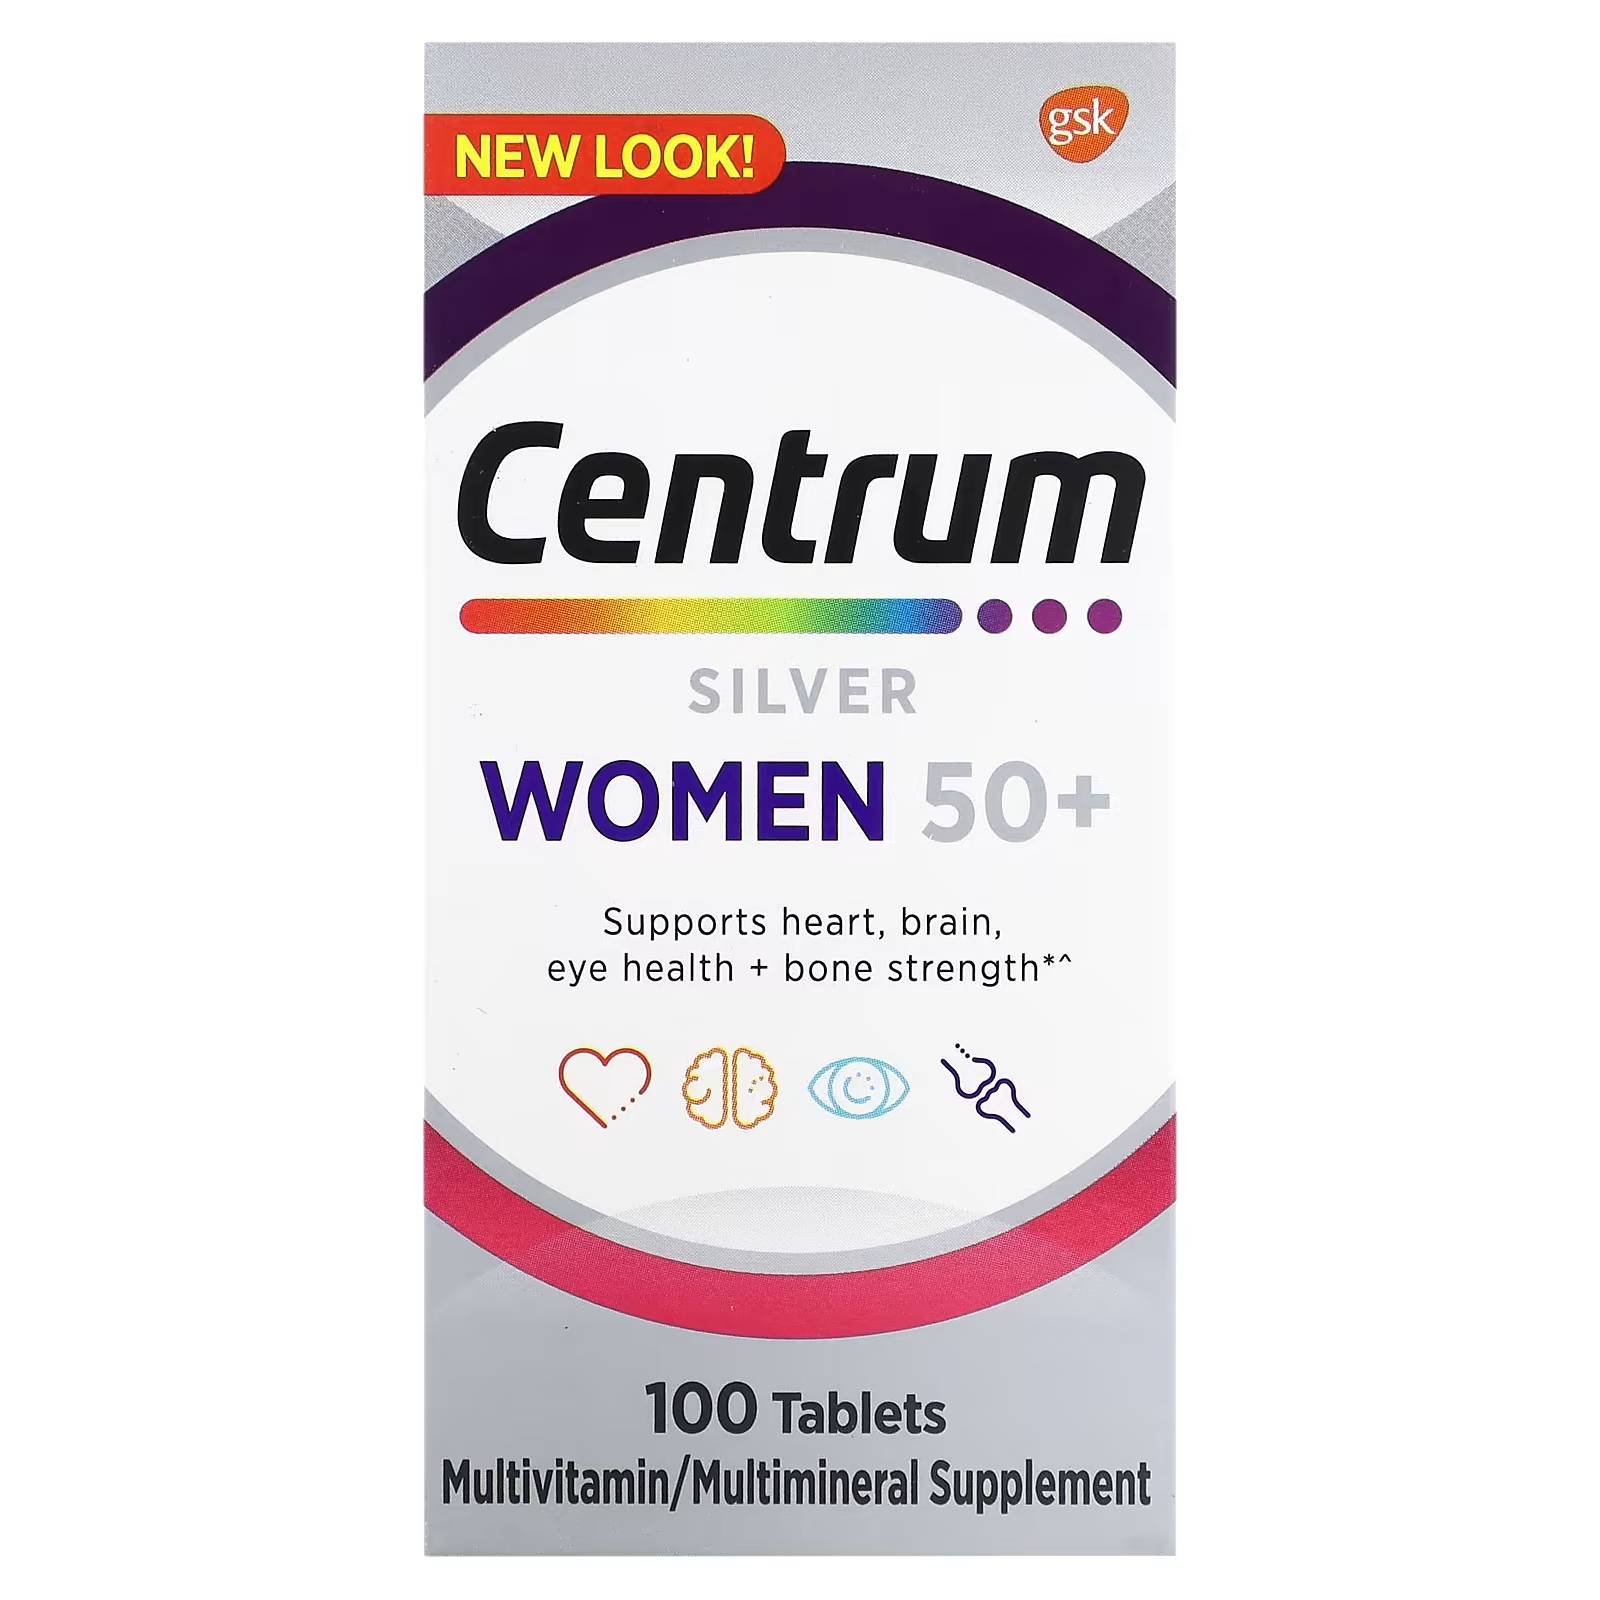 Мультивитаминная добавка Centrum Silver для женщин 50+, 100 таблеток витаминная добавка centrum silver 50 30 таблеток unbranded